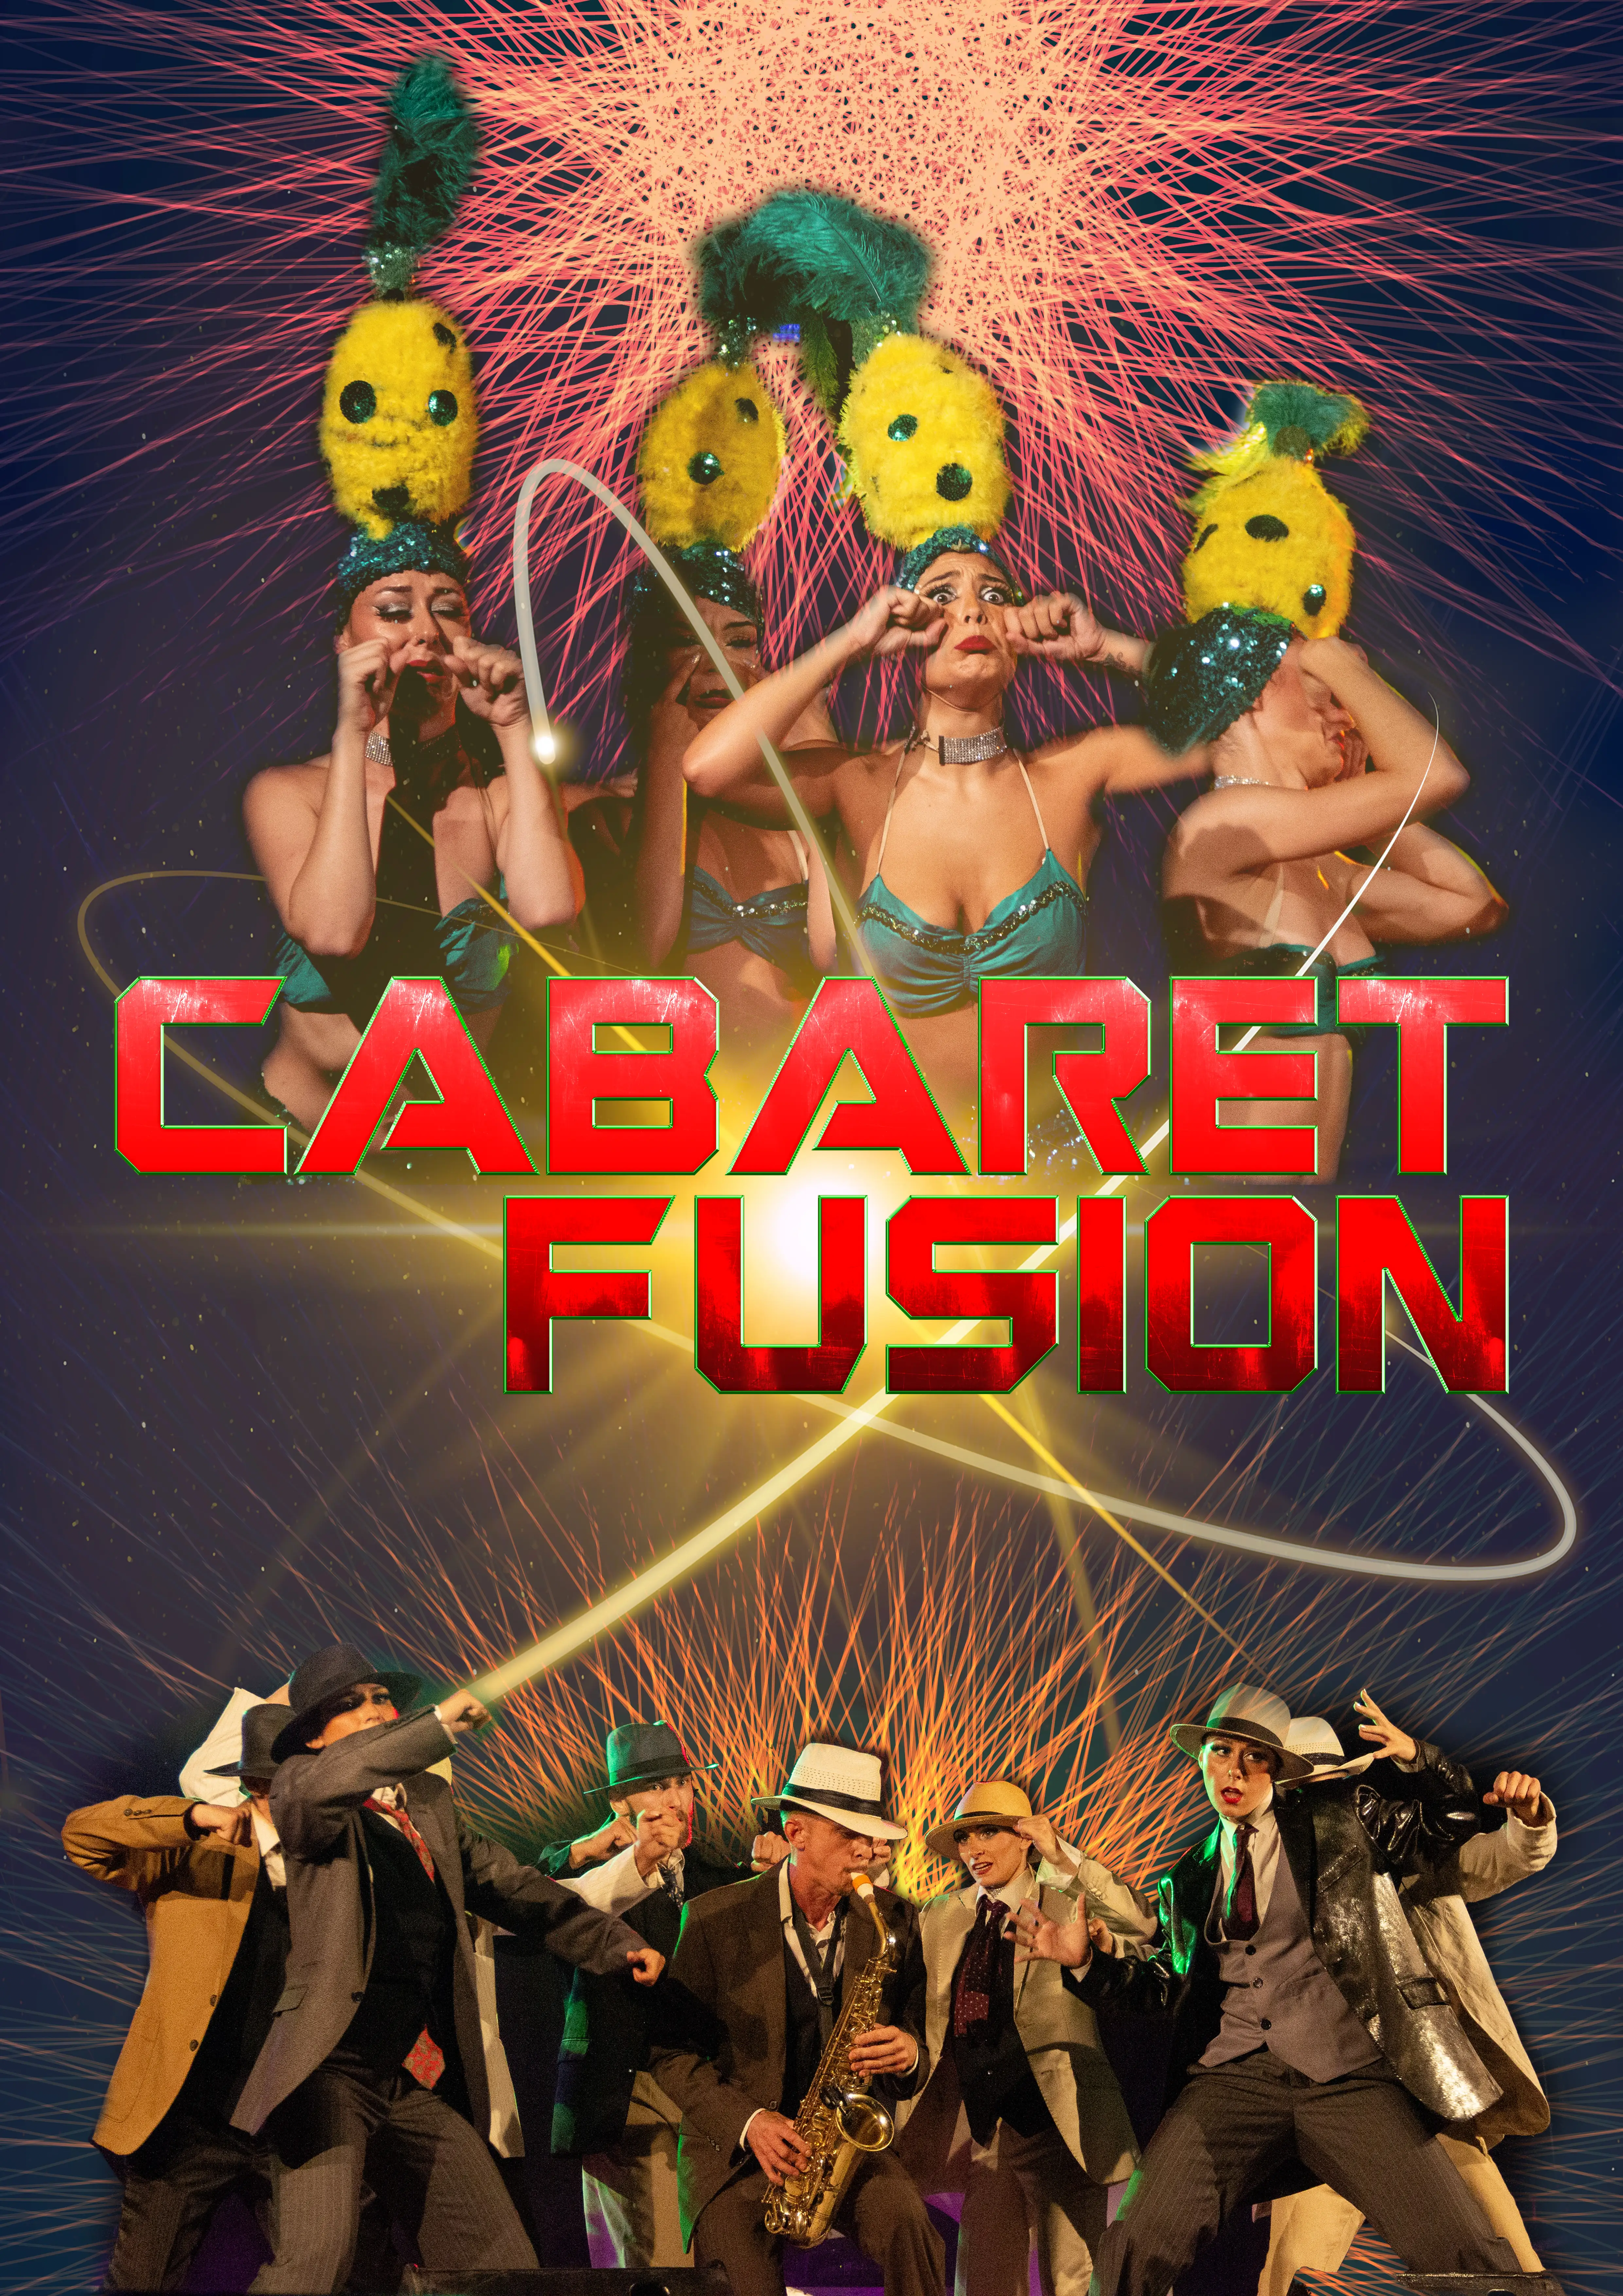 Claude Gérard Production présente spectacle revue cabaret fusion